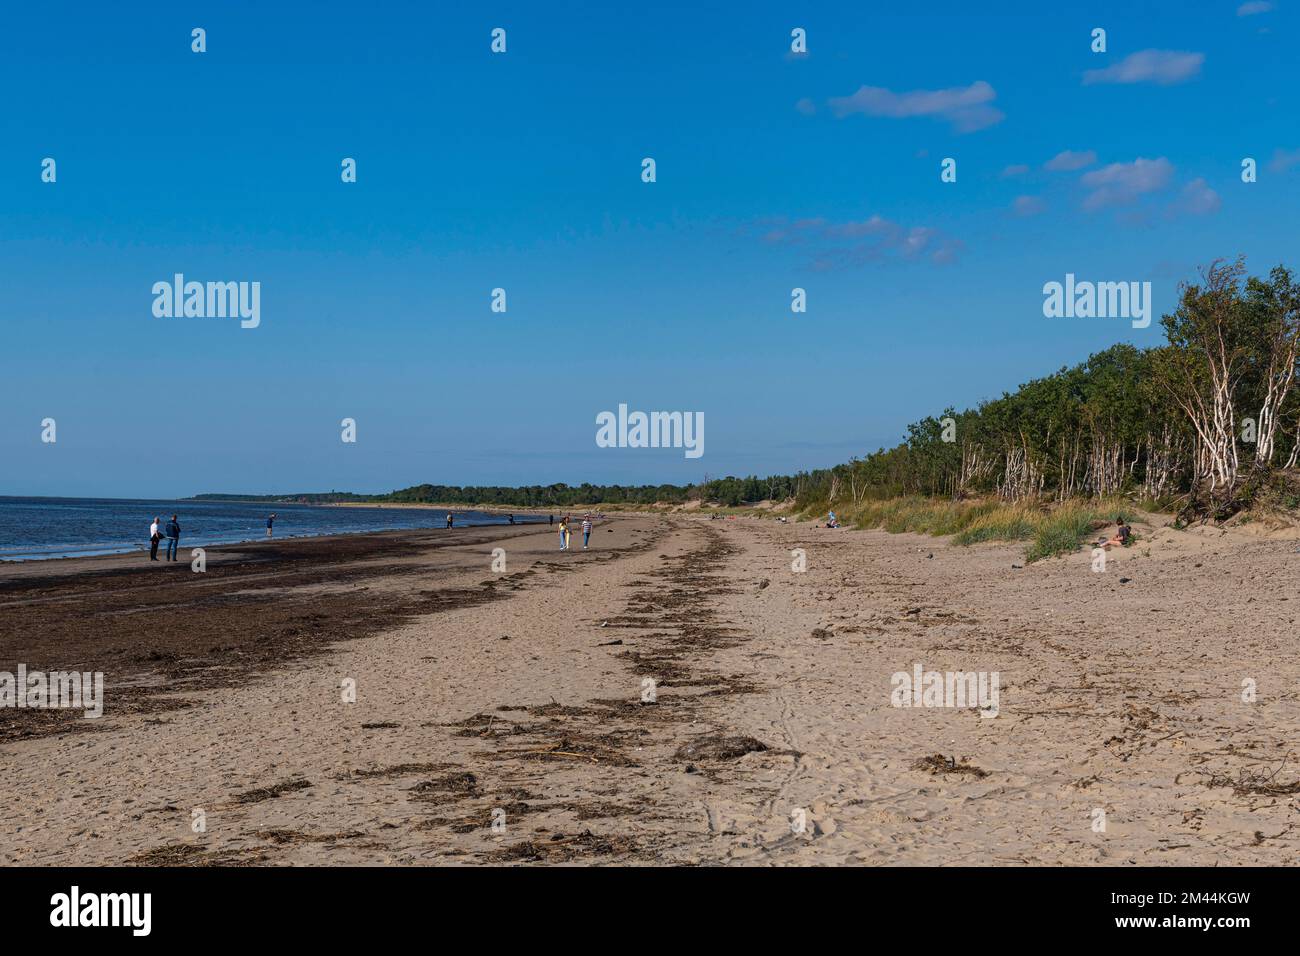 Lunga spiaggia sabbiosa sul mare bianco, Severodvinsk, Arkhangelsk Oblast, Russia Foto Stock